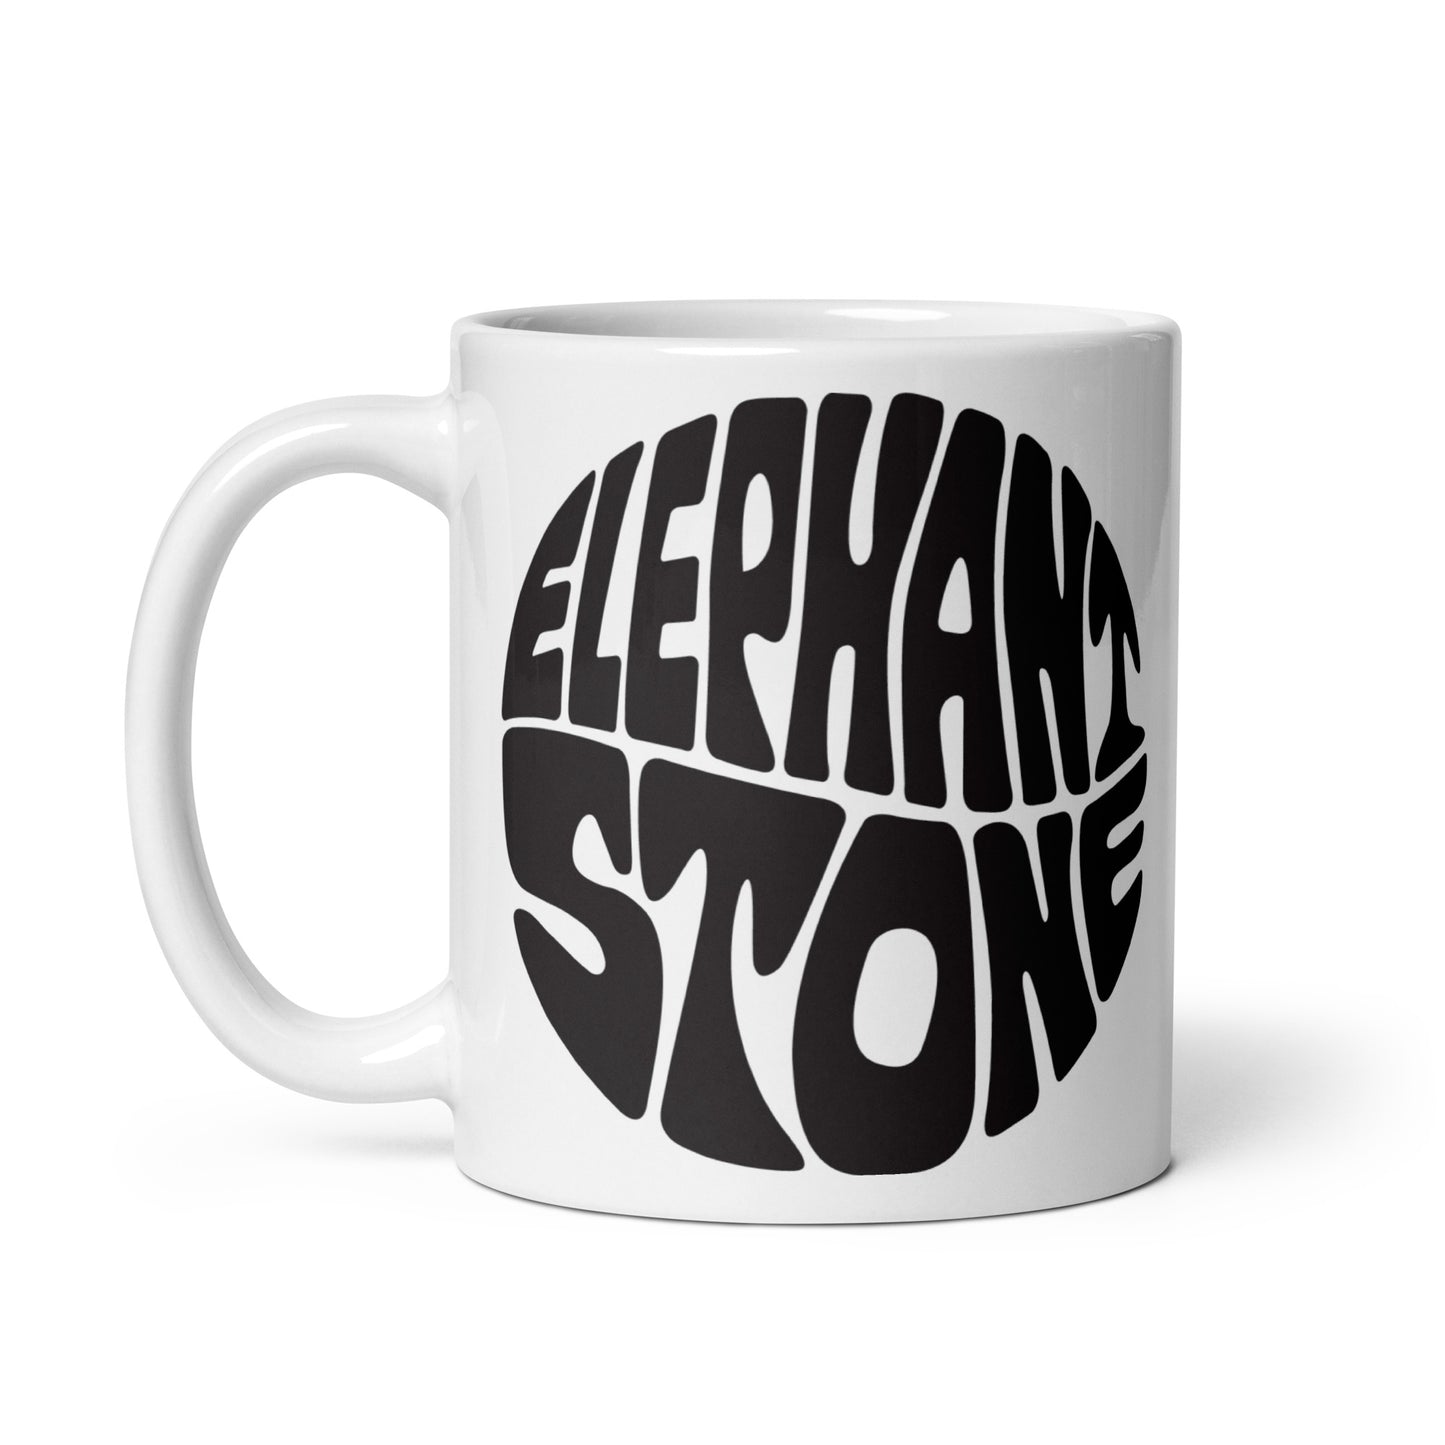 White glossy mug with Elephant Stone logo